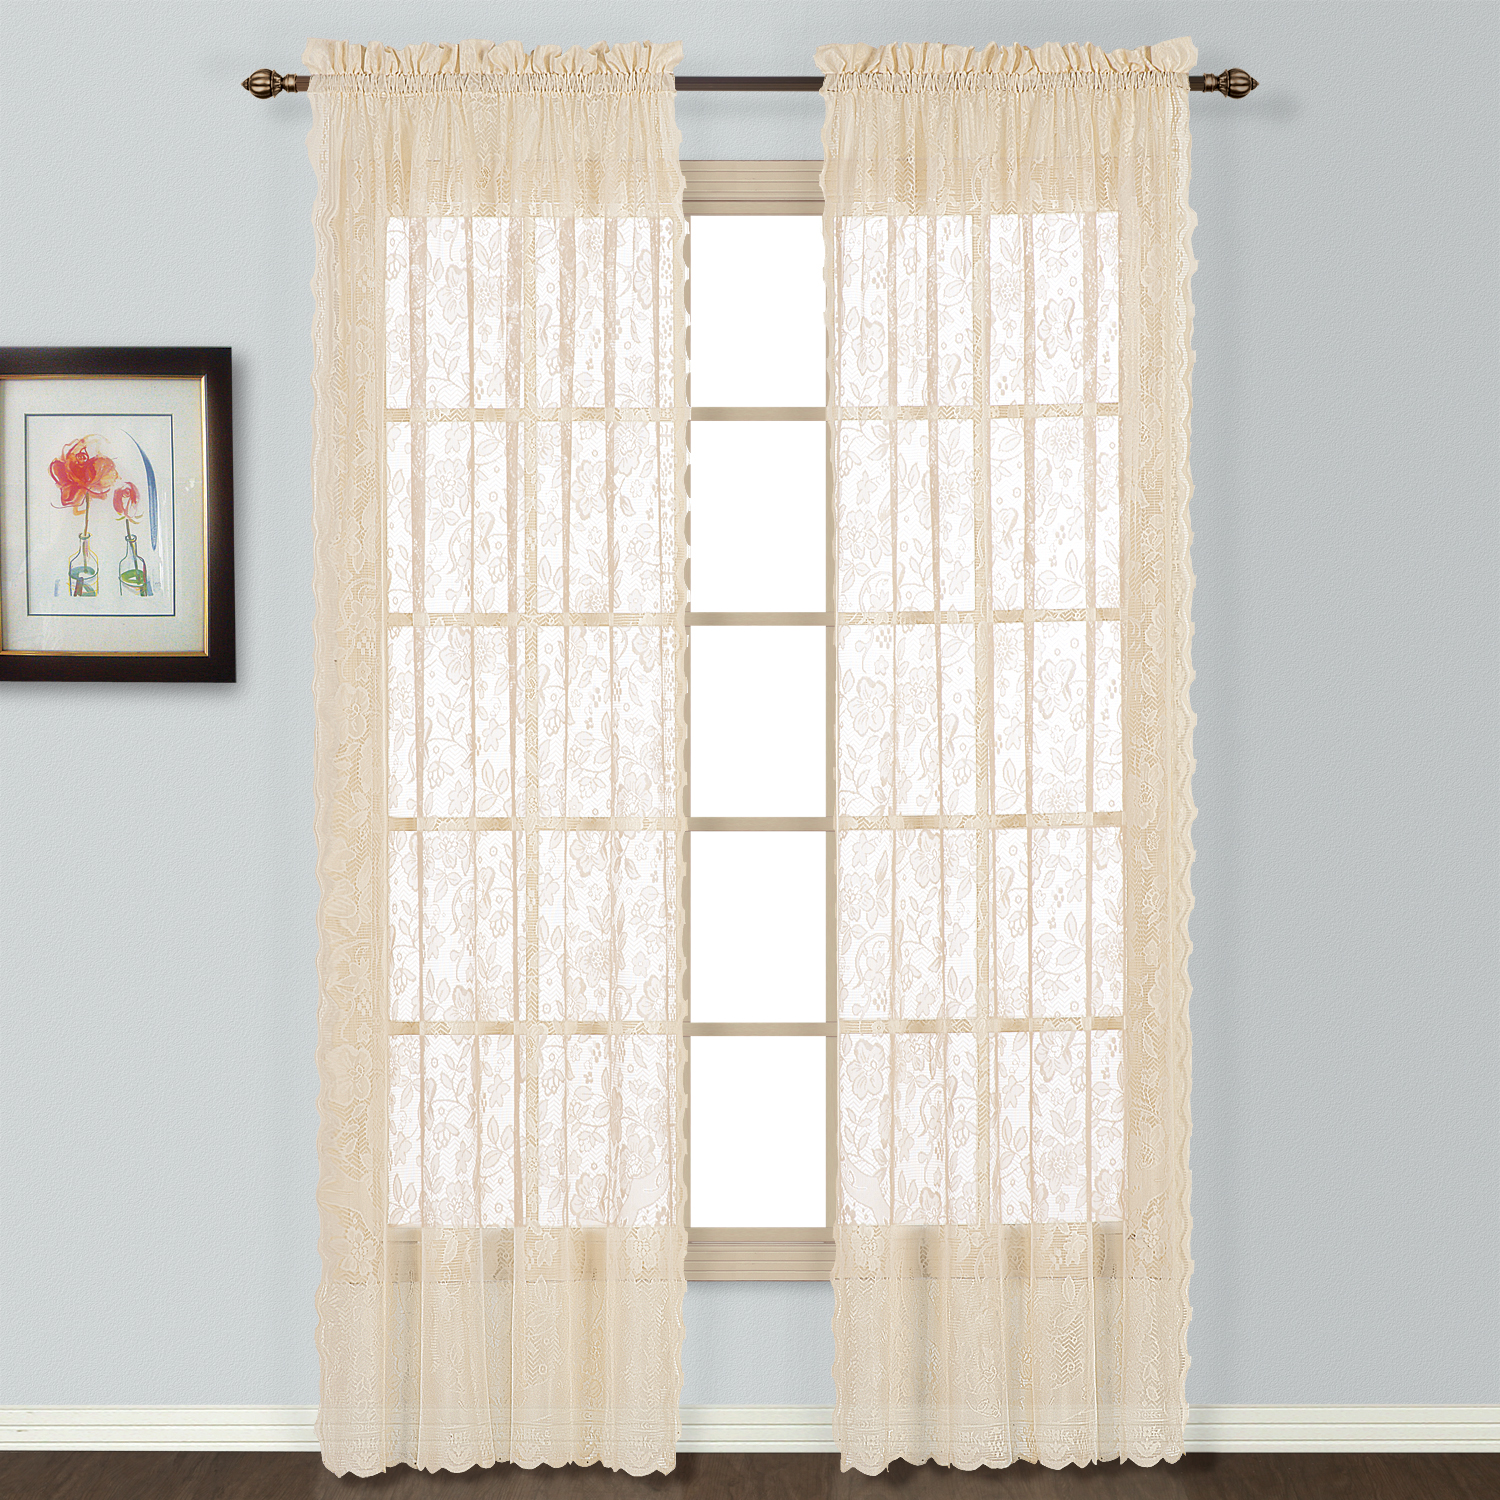 United Curtain Company Windsor 56" x 72" eligant lace window panel